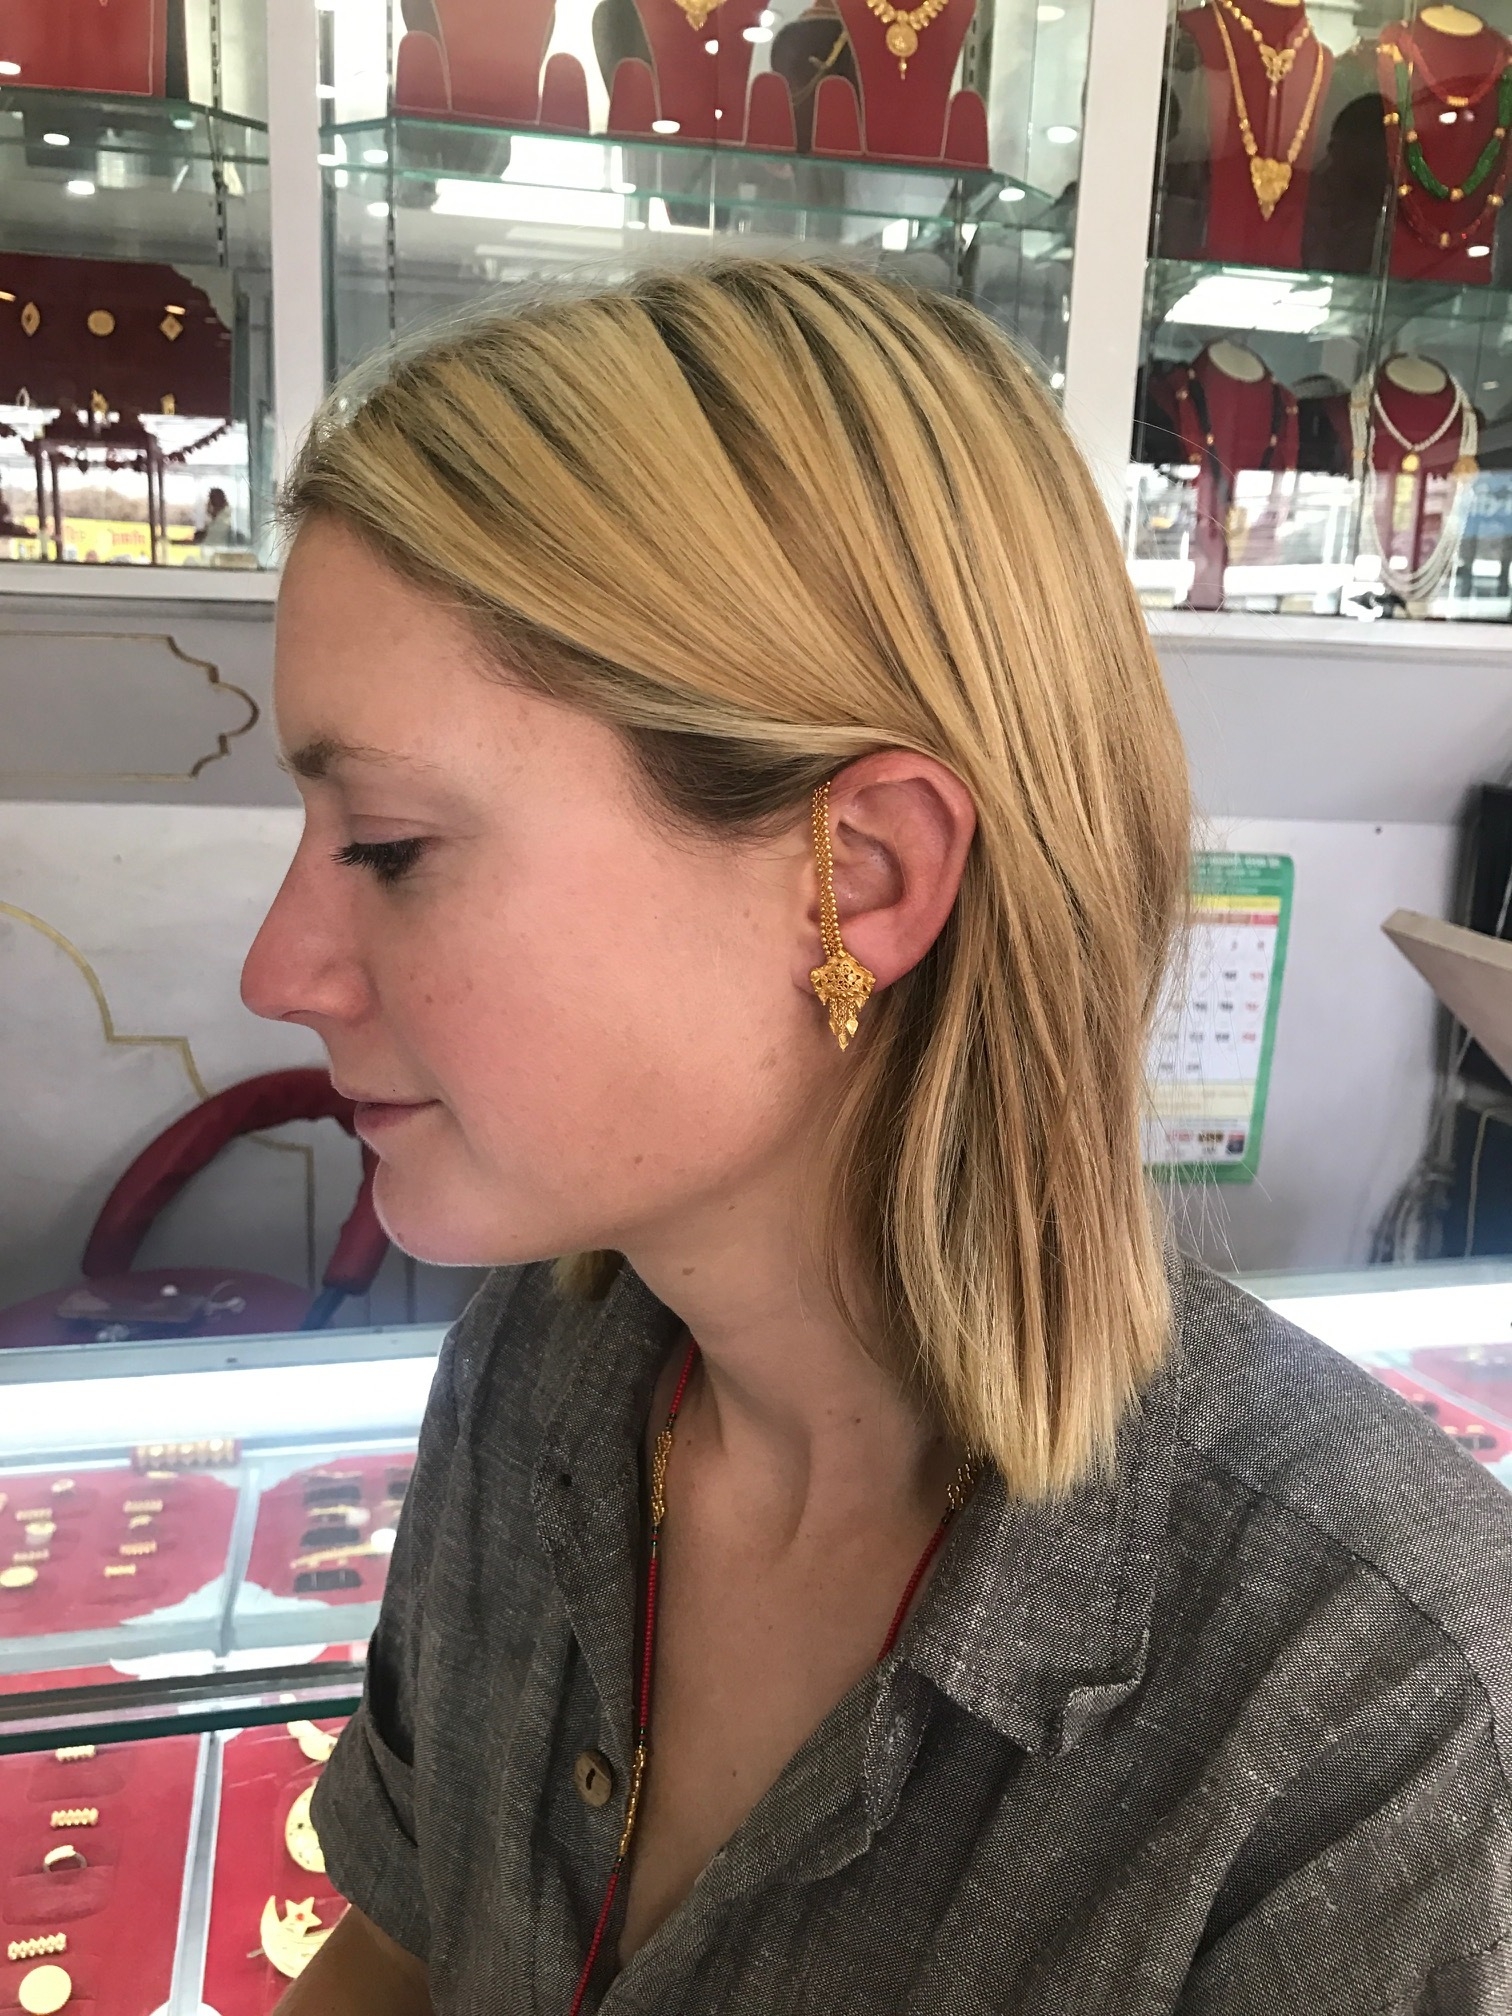 Ali's new earrings